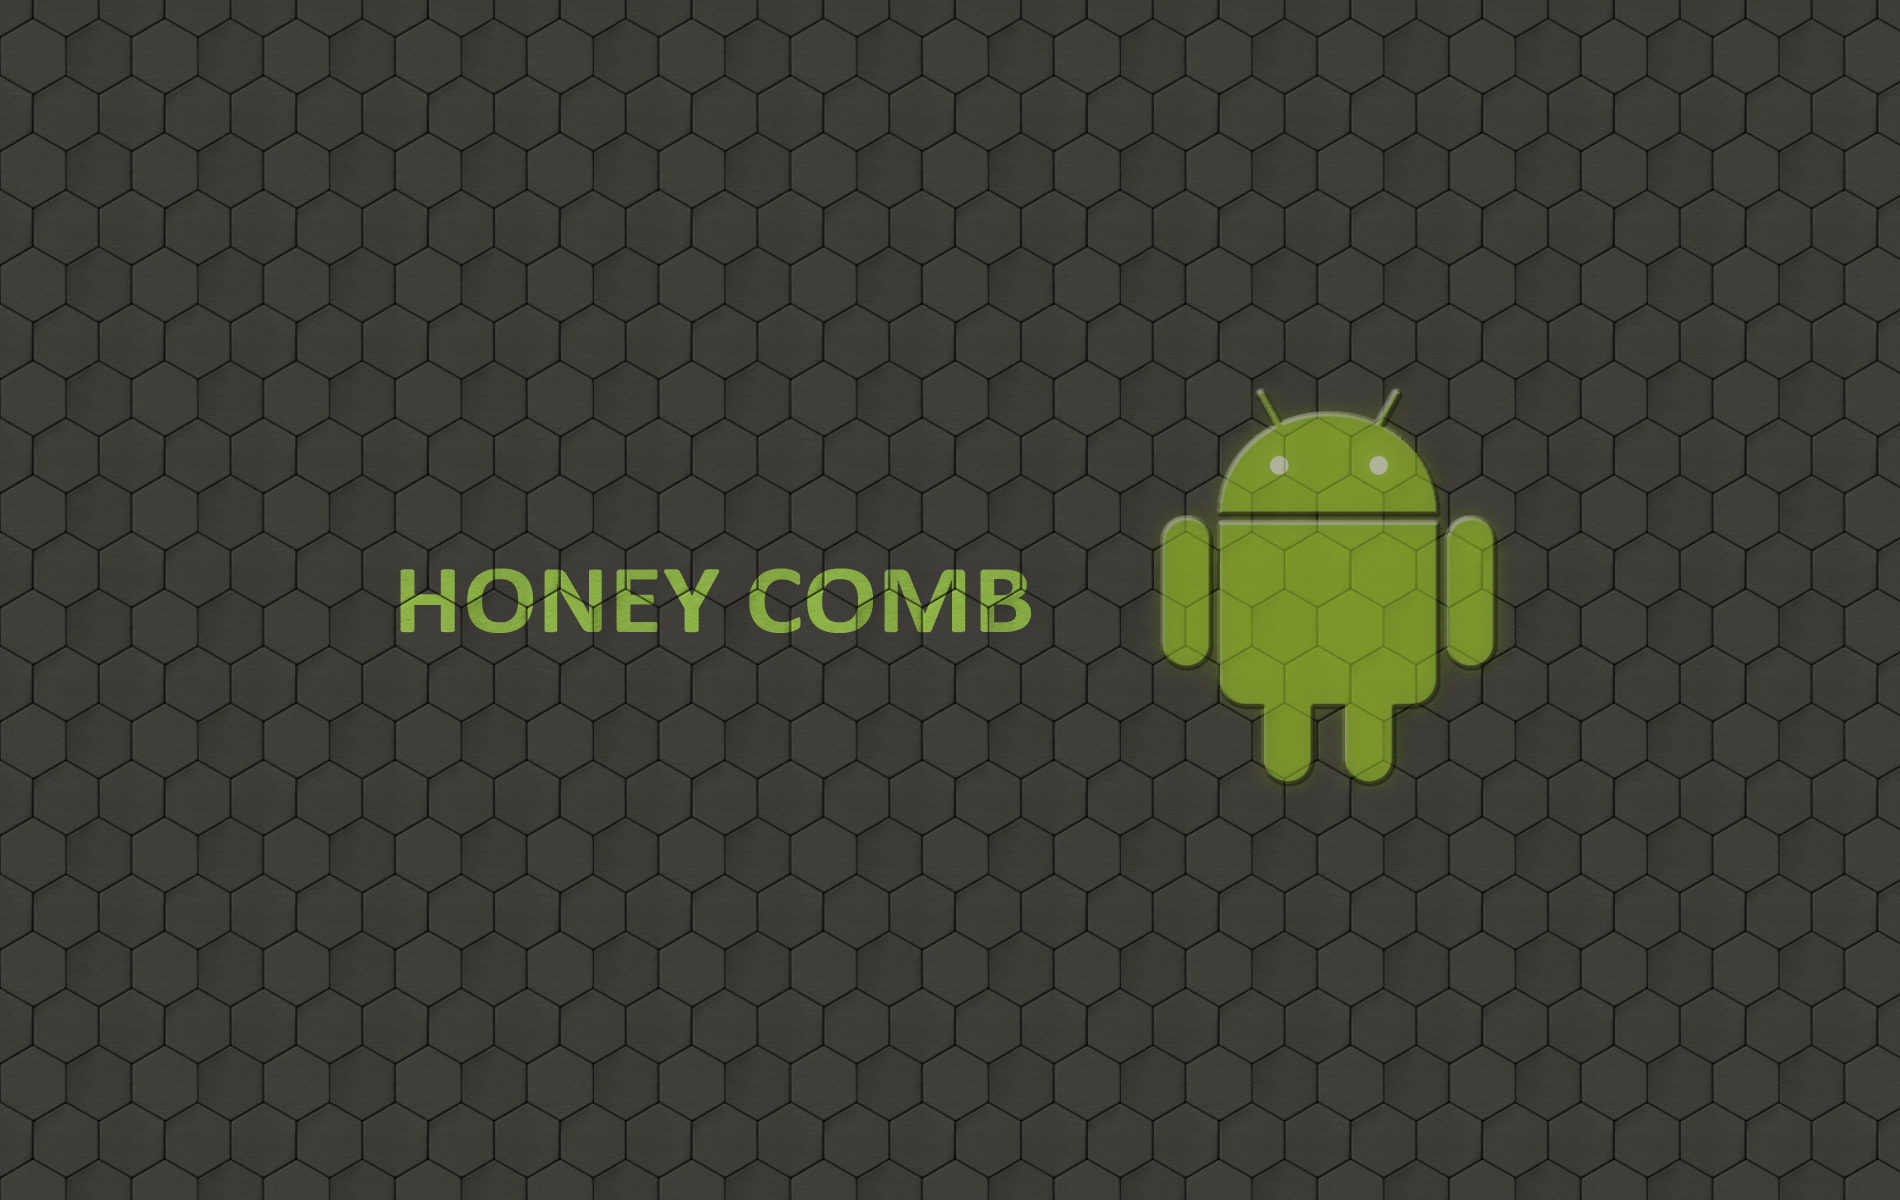 Обои андроида 10. Логотип андроид. Фон для андроид. Картинки на рабочий стол андроид. Обои Android Honeycomb.